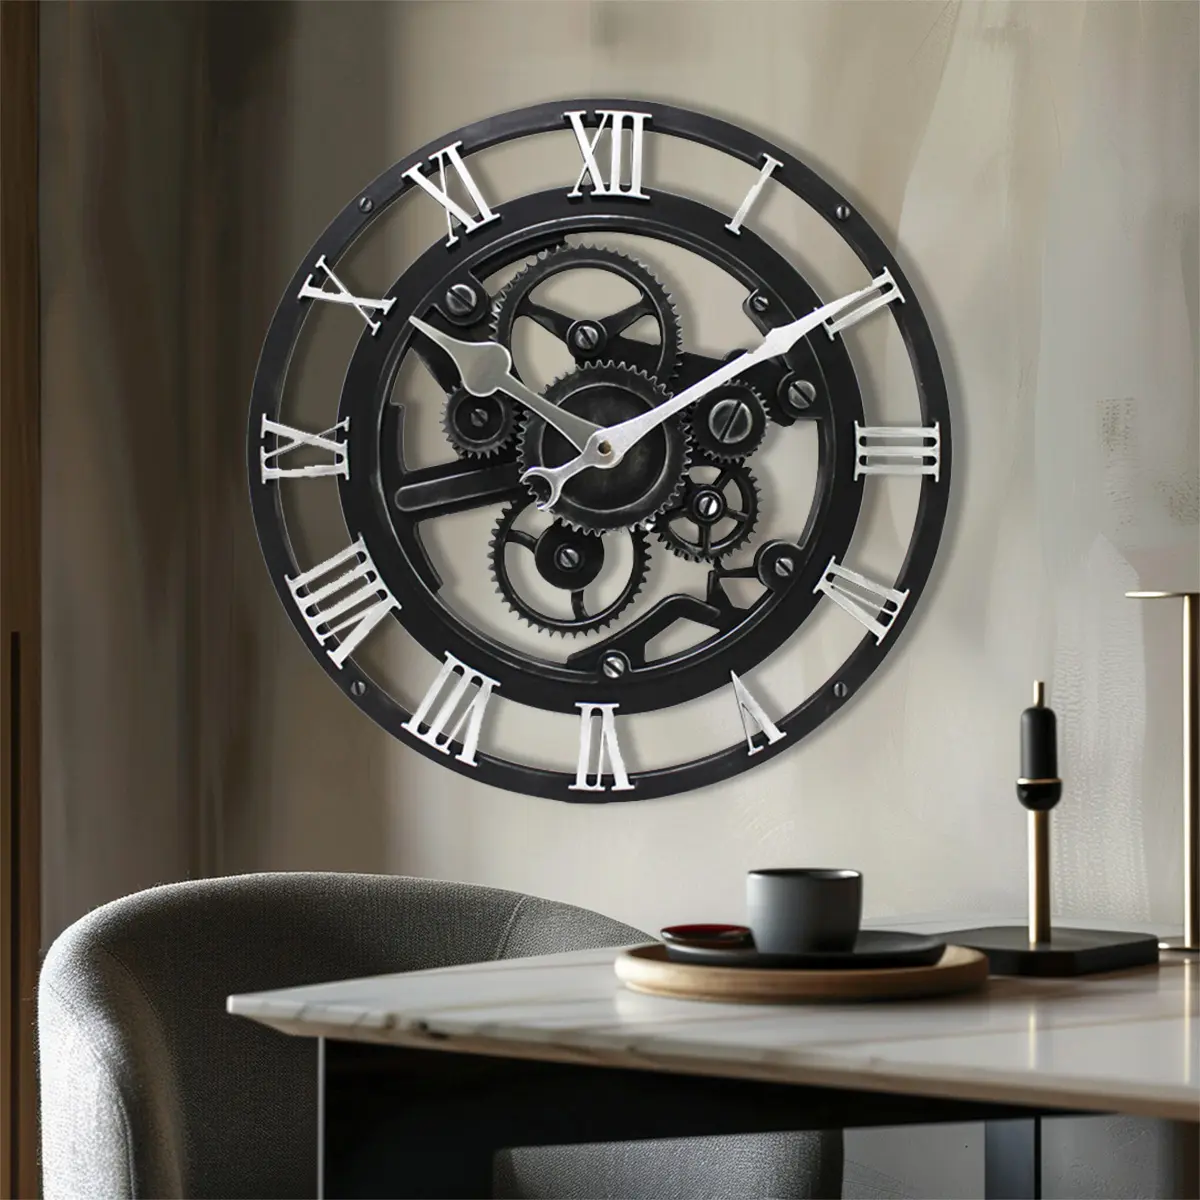 Relógio de parede decorativo estilo punk industrial vintage 14" com numeral romano